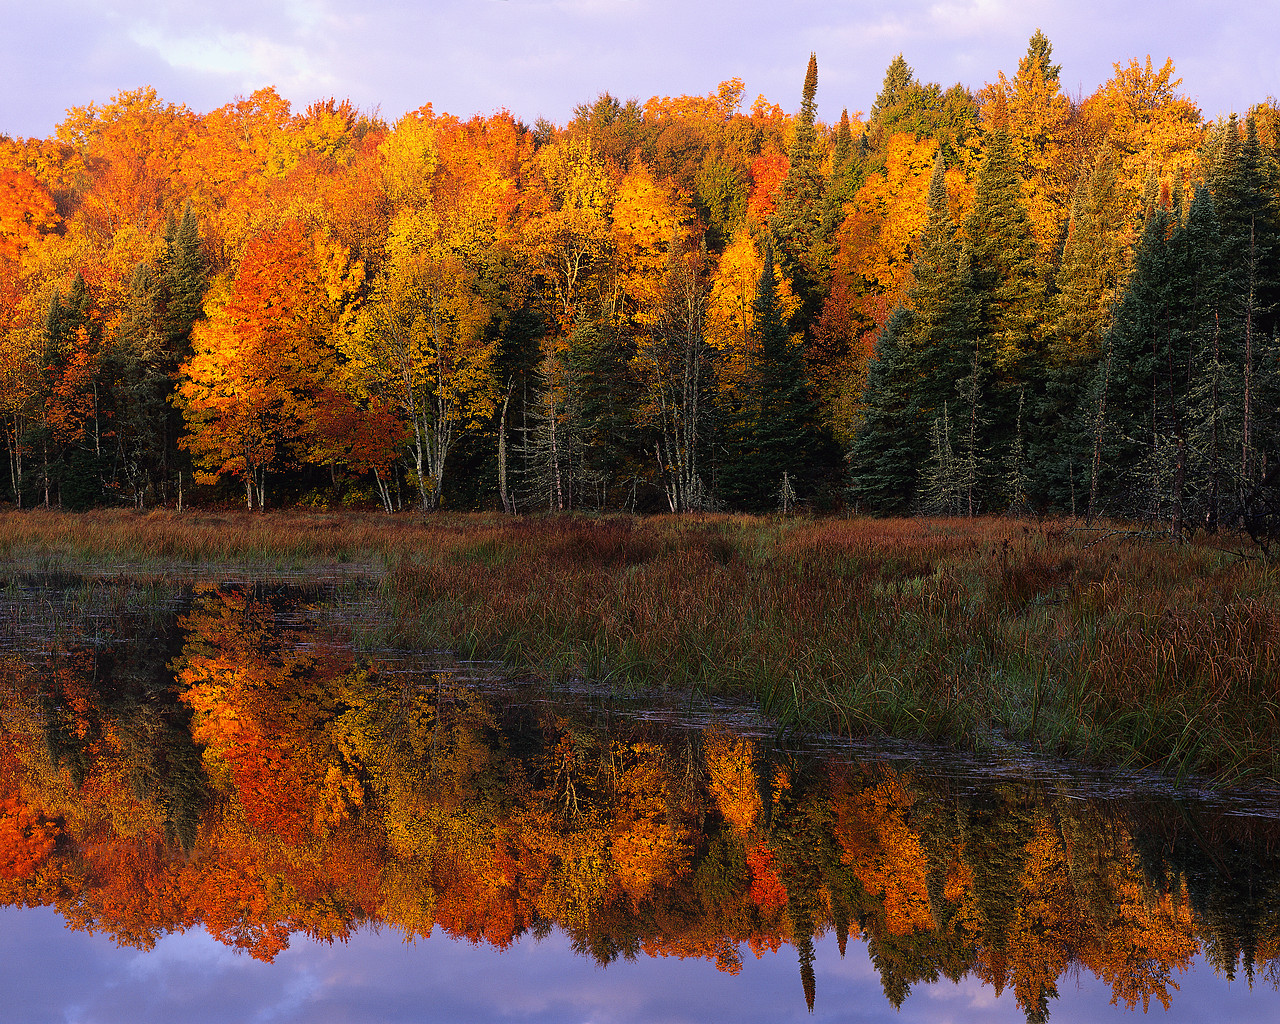 Autumn Foliage Along a Calm Lake Watersmeet, Michigan, USA